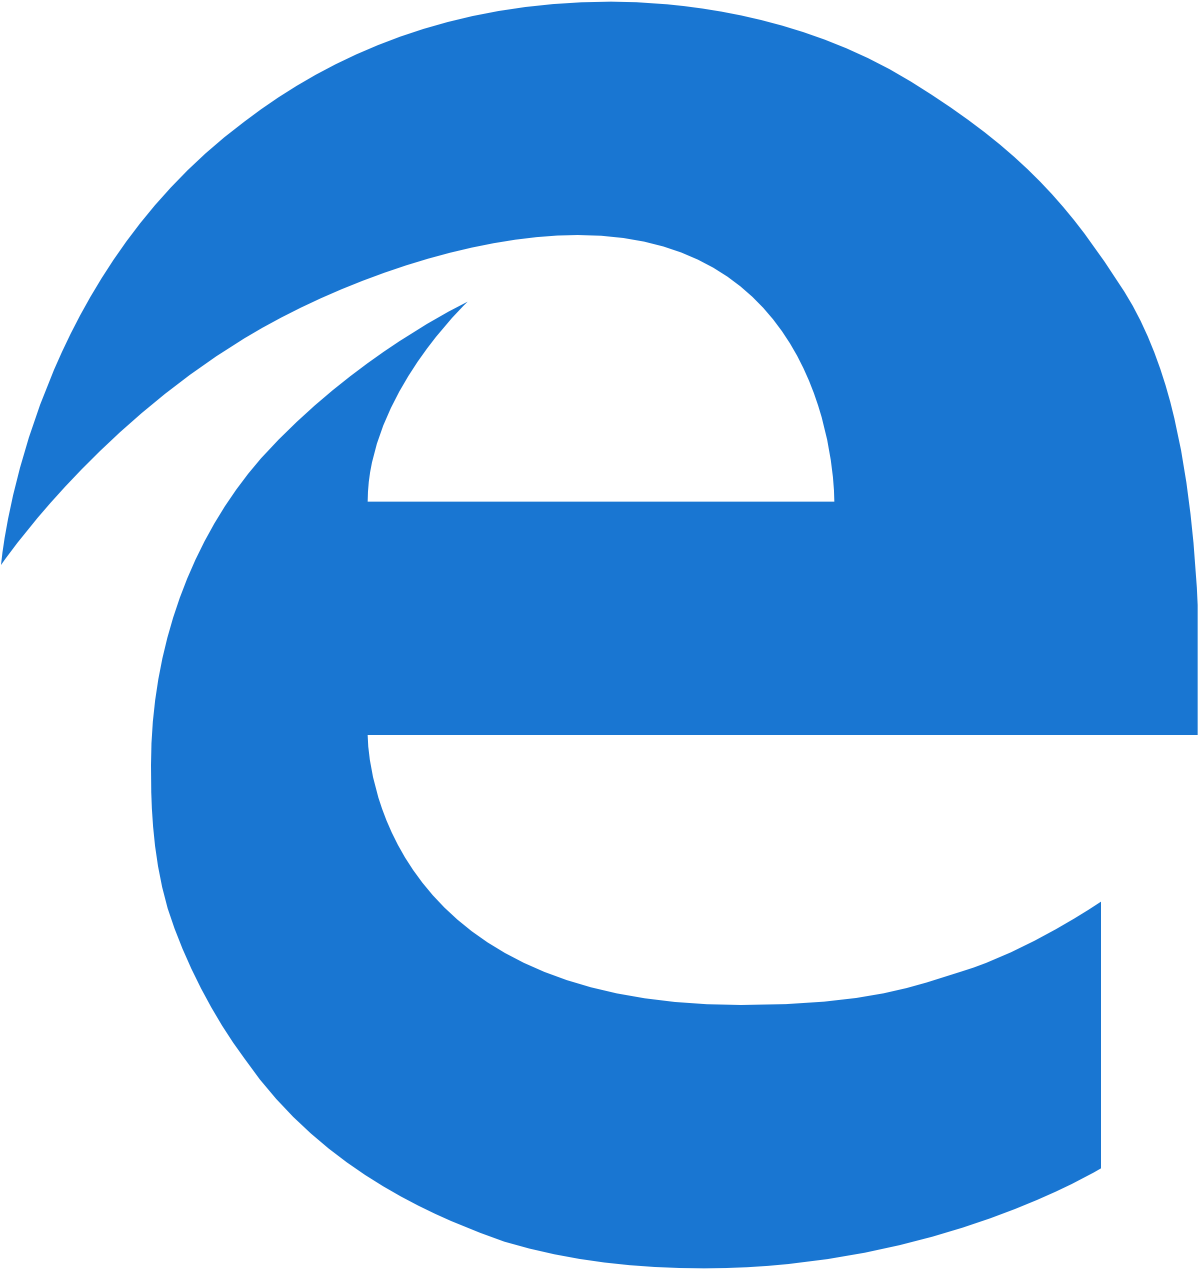 Значок Microsoft Edge. Microsoft Edge иконка PNG. Иконки браузера Microsoft Edge icon. Старая иконка Microsoft Edge. Интернет эксплорер edge